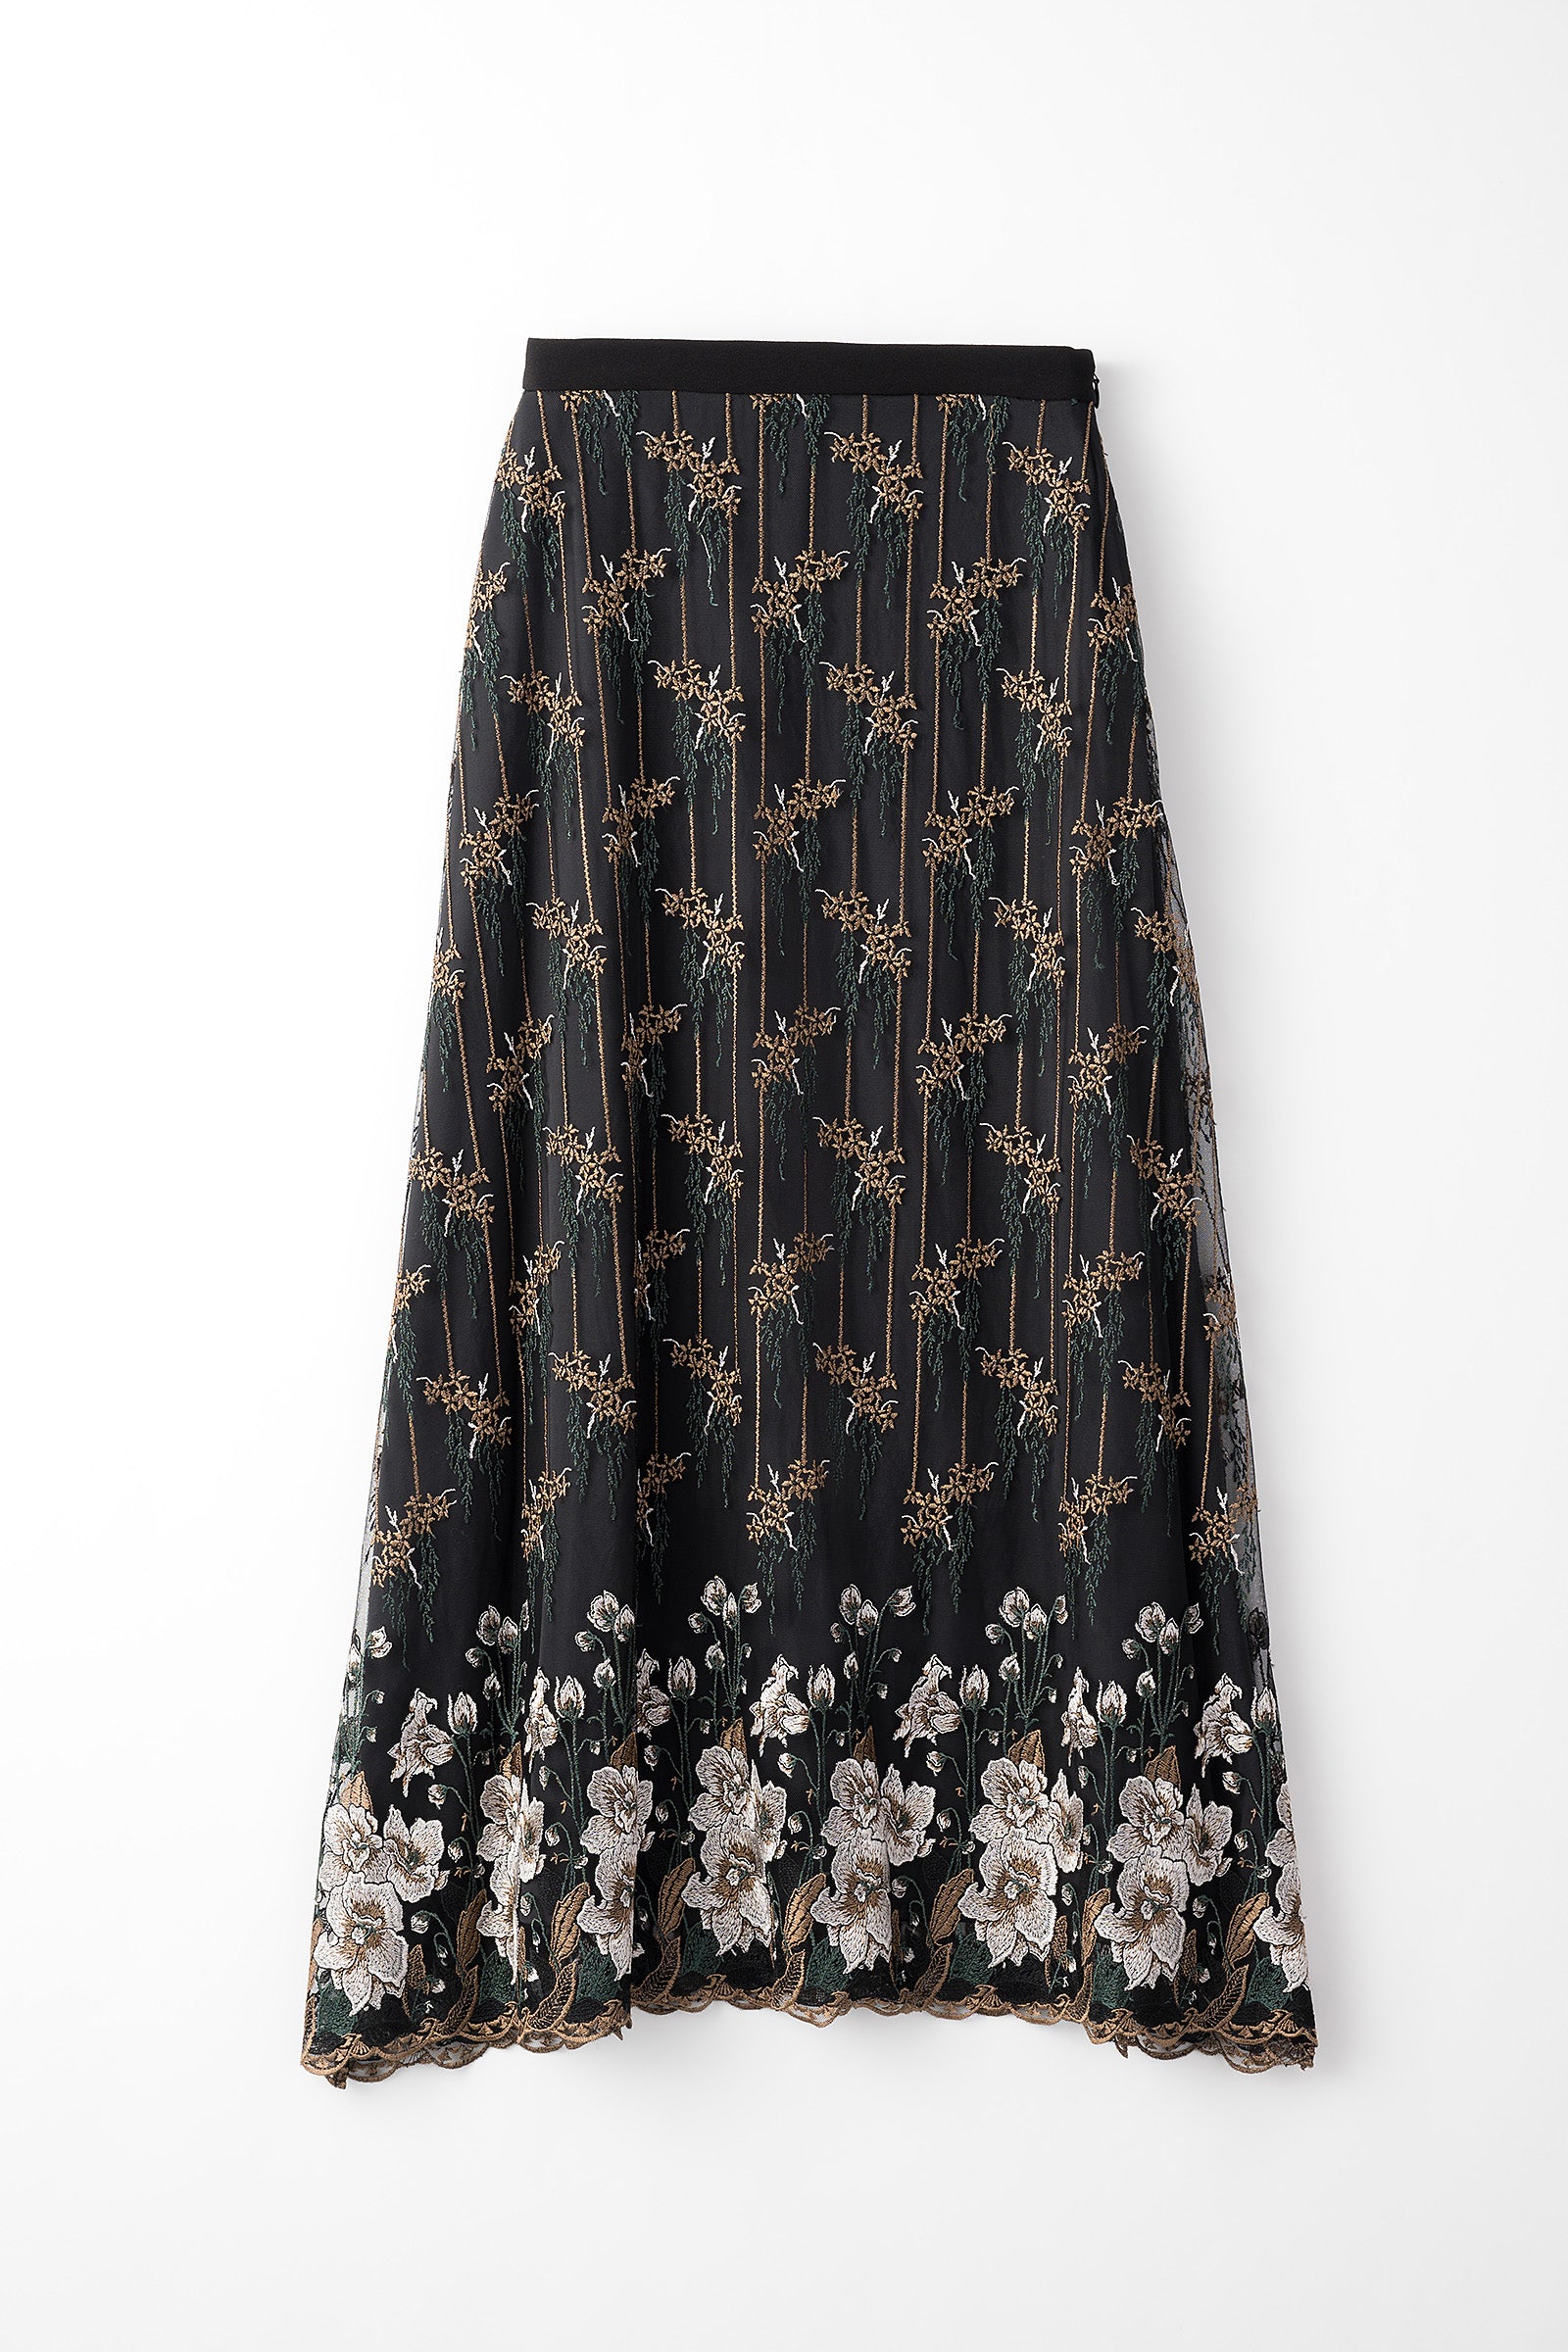 サイズ[新品未使用]Spick\u0026Span Embroidered lace skirt